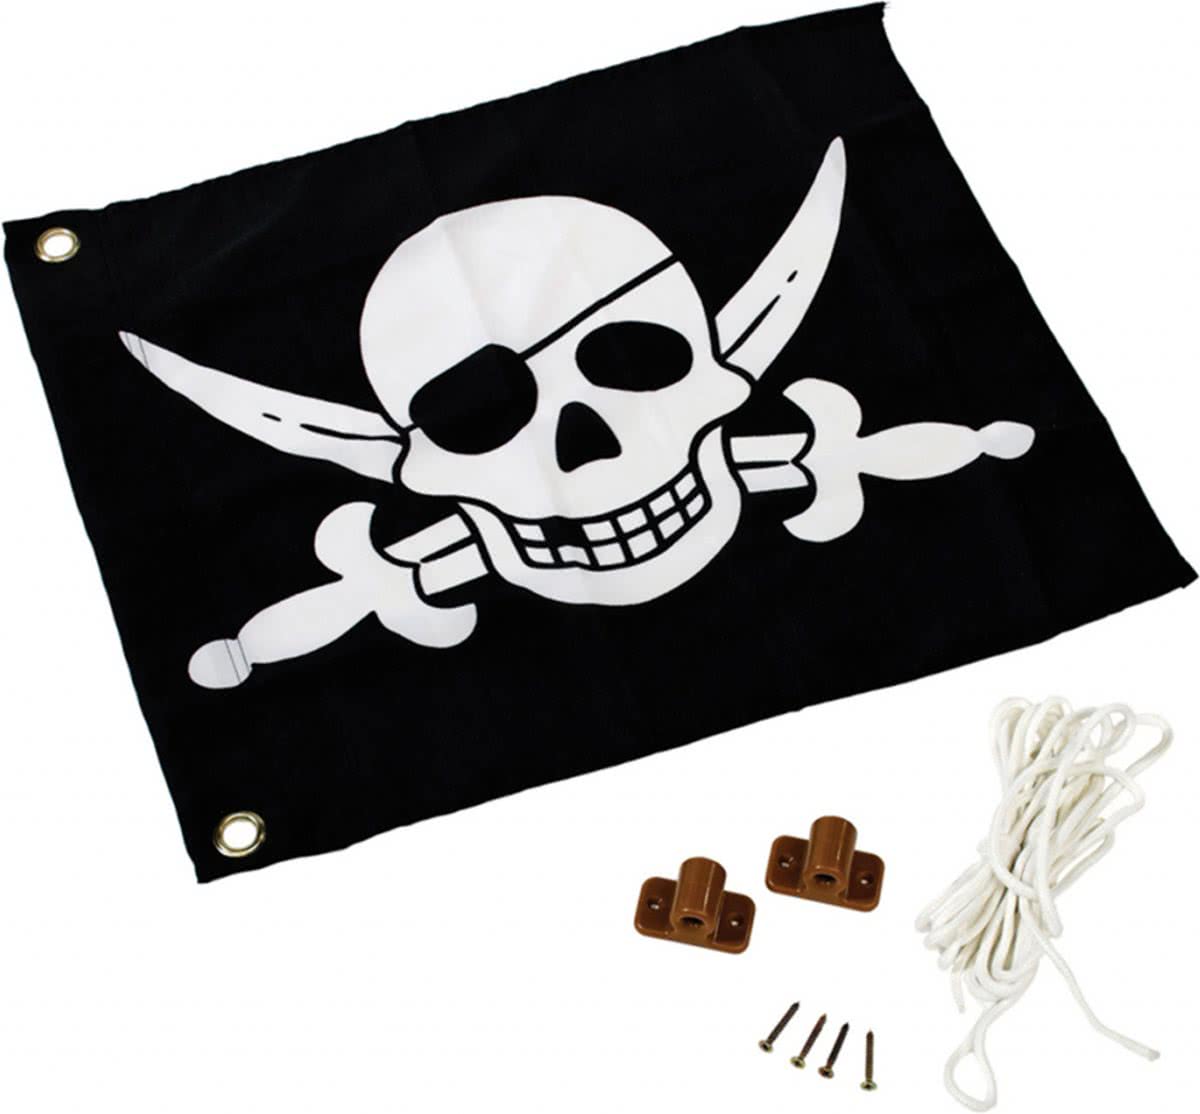 Vlaggensysteem voor speeltoren inclusief piraten vlag